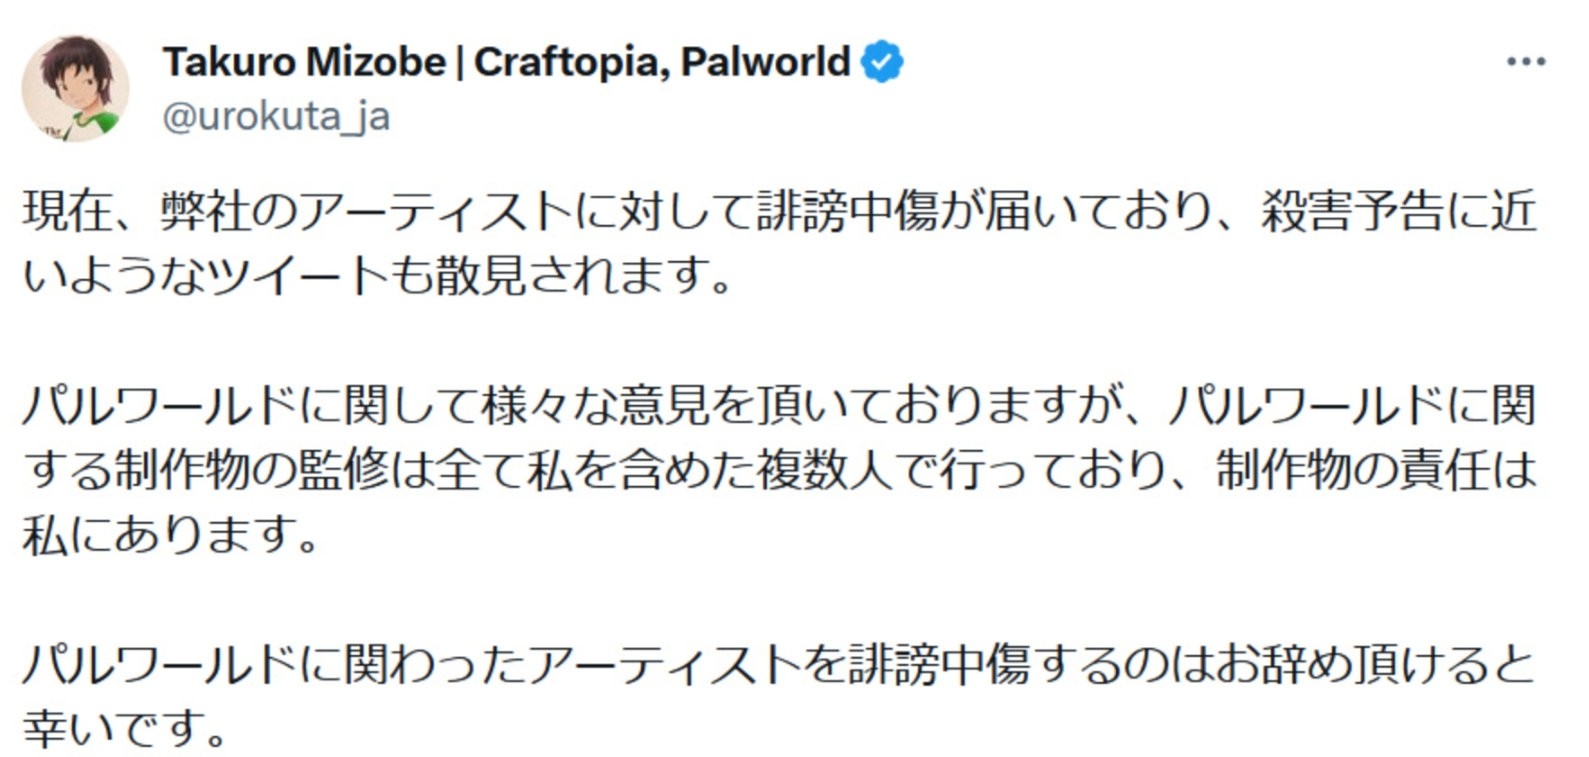 《幻兽帕鲁》开发商遭死亡威胁 CEO呼吁停止该行为